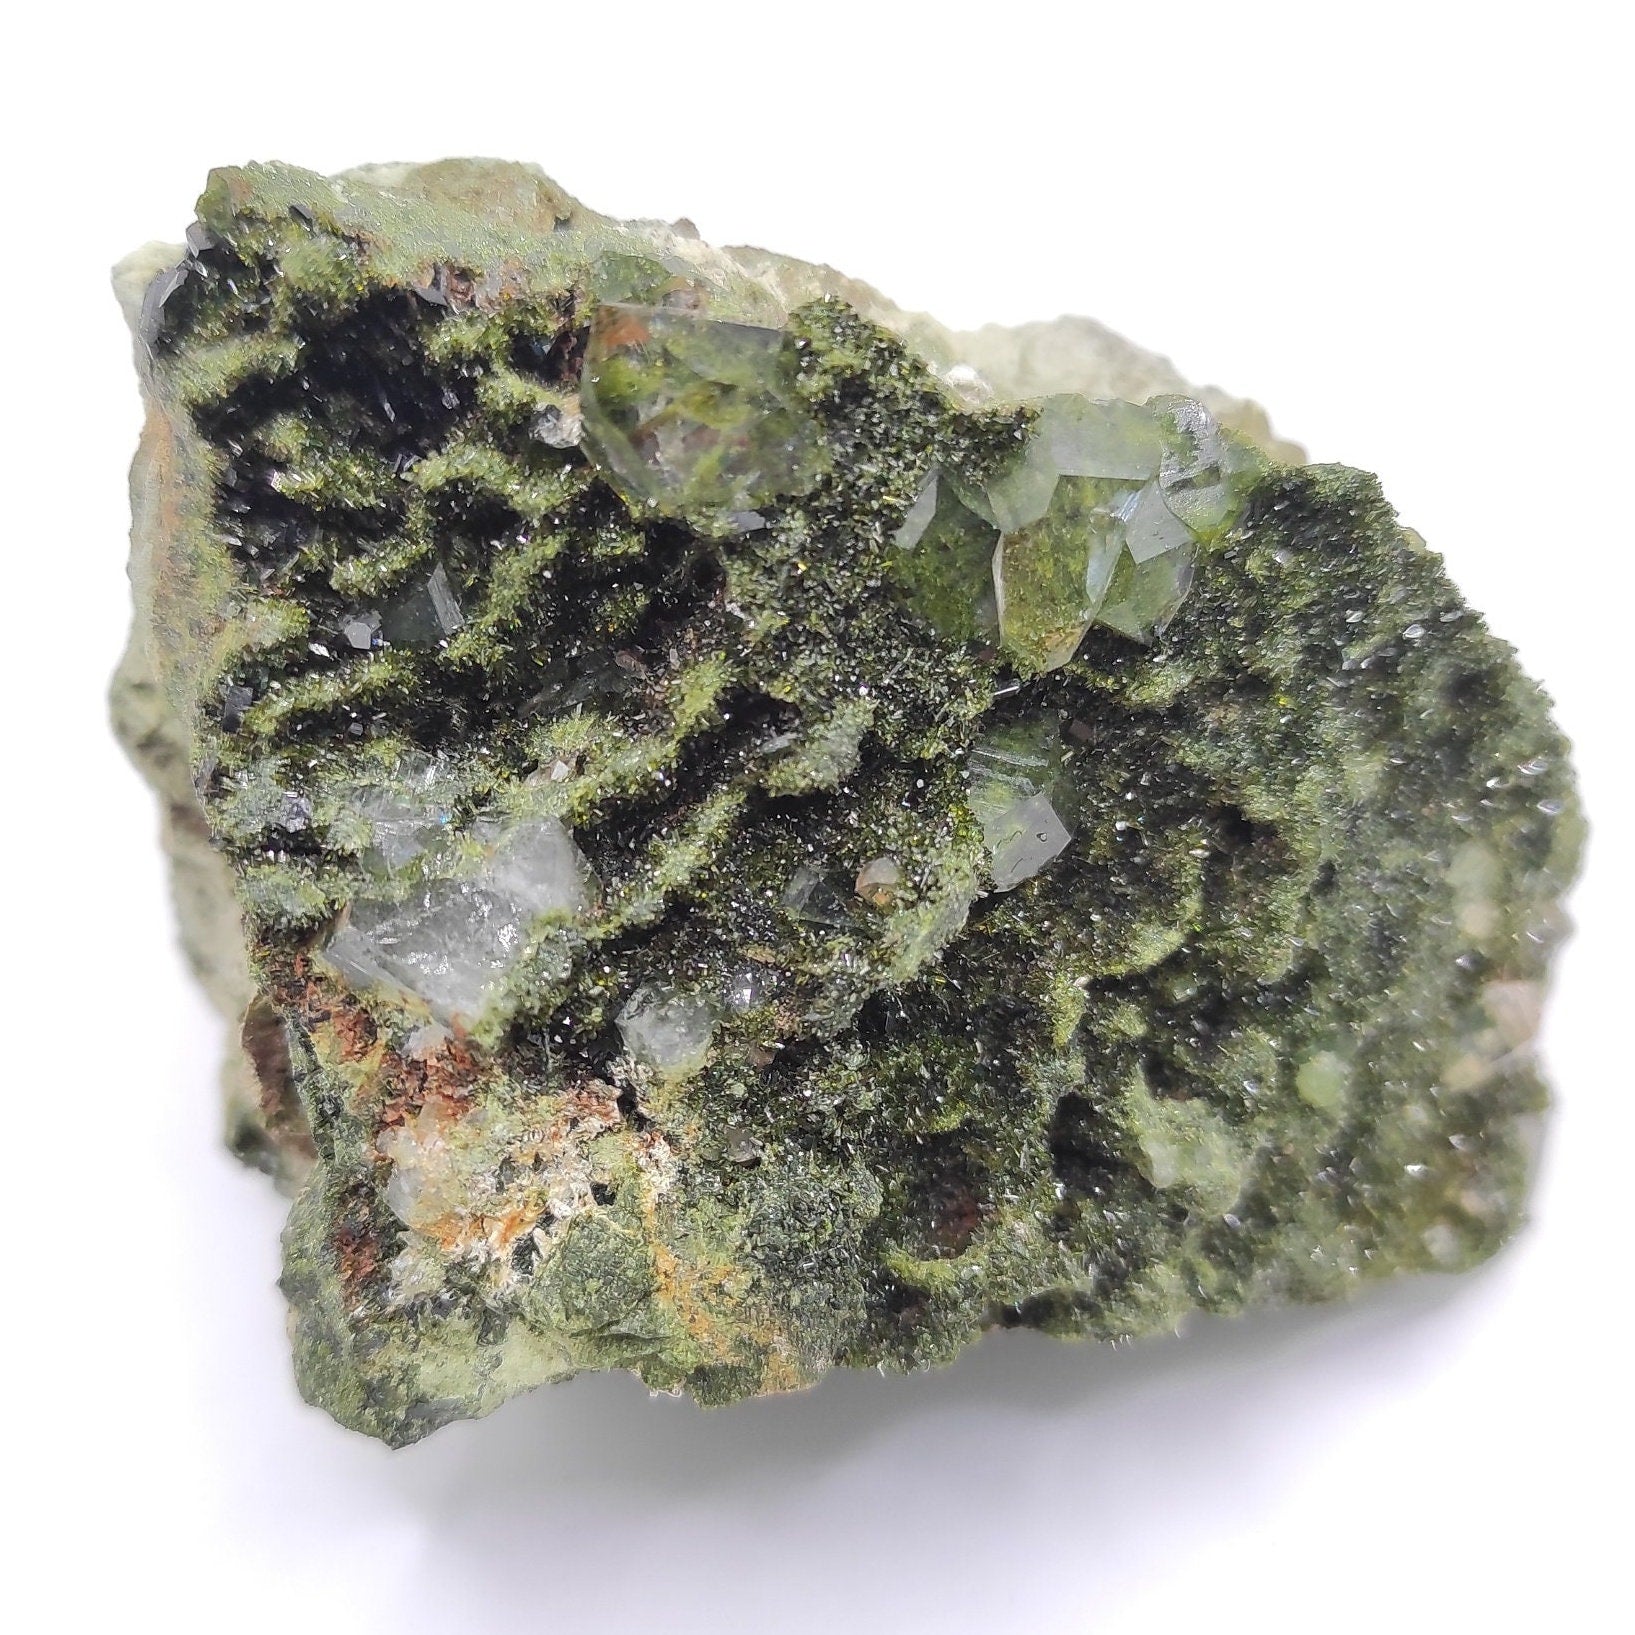 180g Sparkly Epidote & Forest Quartz - Hakkari, Turkey - Epidote with Clear Quartz - Forest Fairy Quartz - Natural Minerals - Rare Find